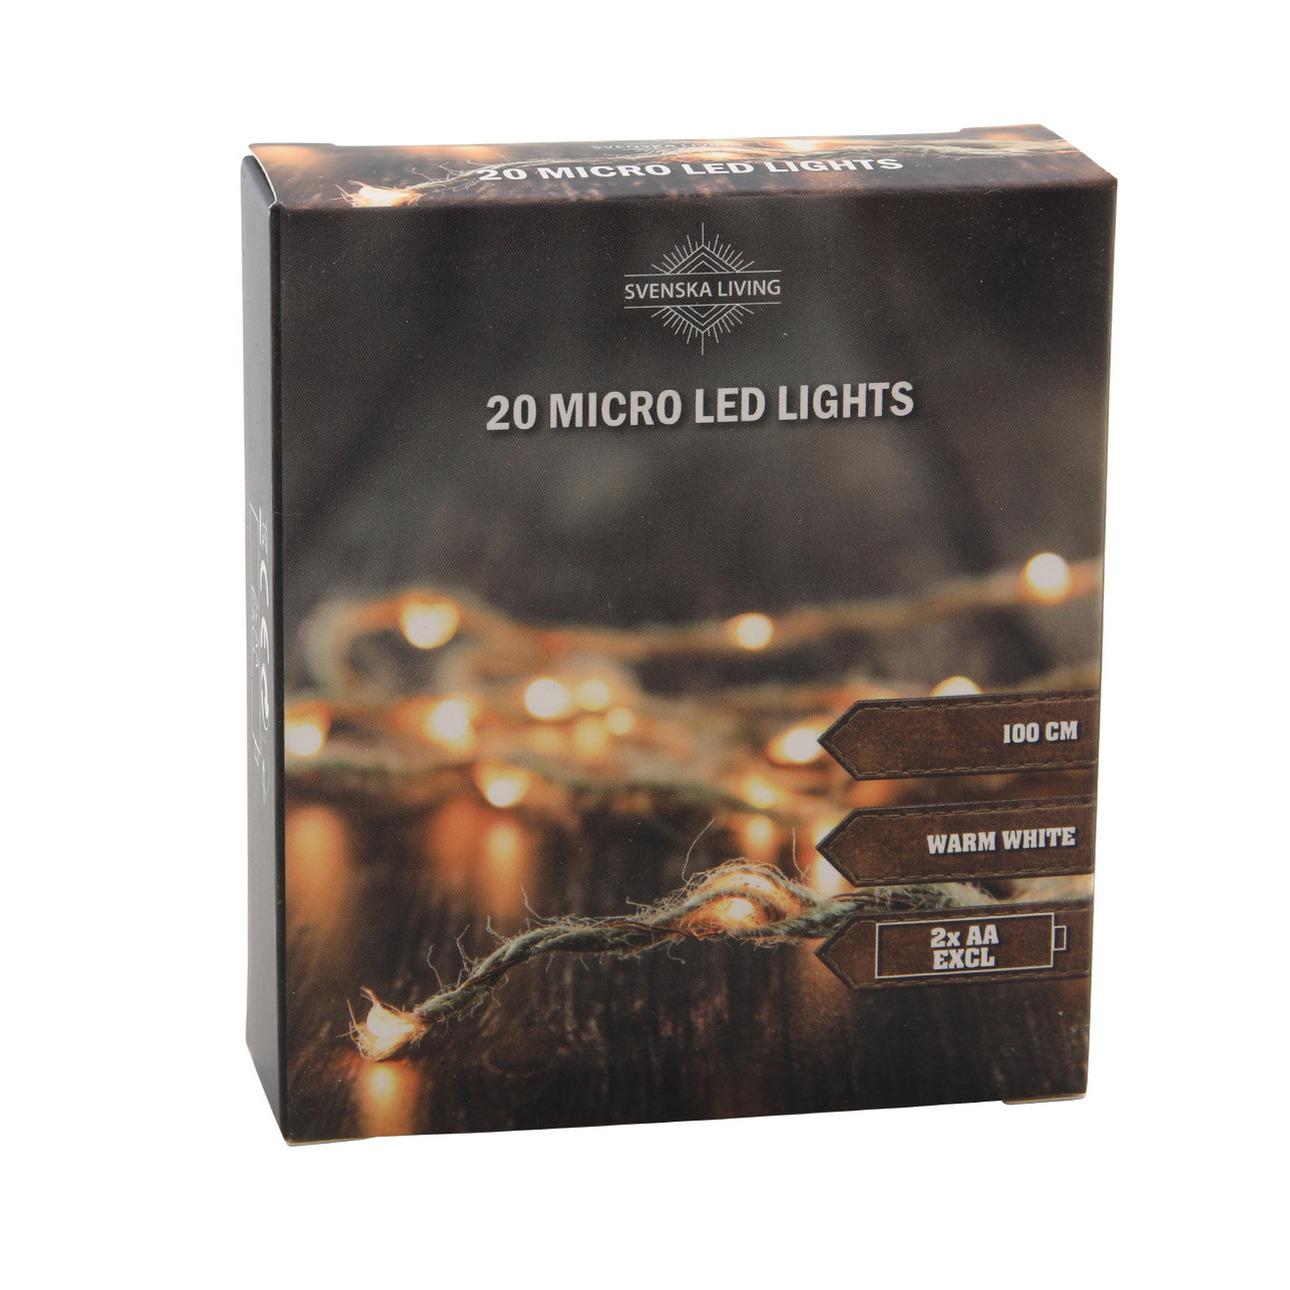 Touwverlichting met 20 micro led lampjes sfeerverlichting op batterij 100 cm